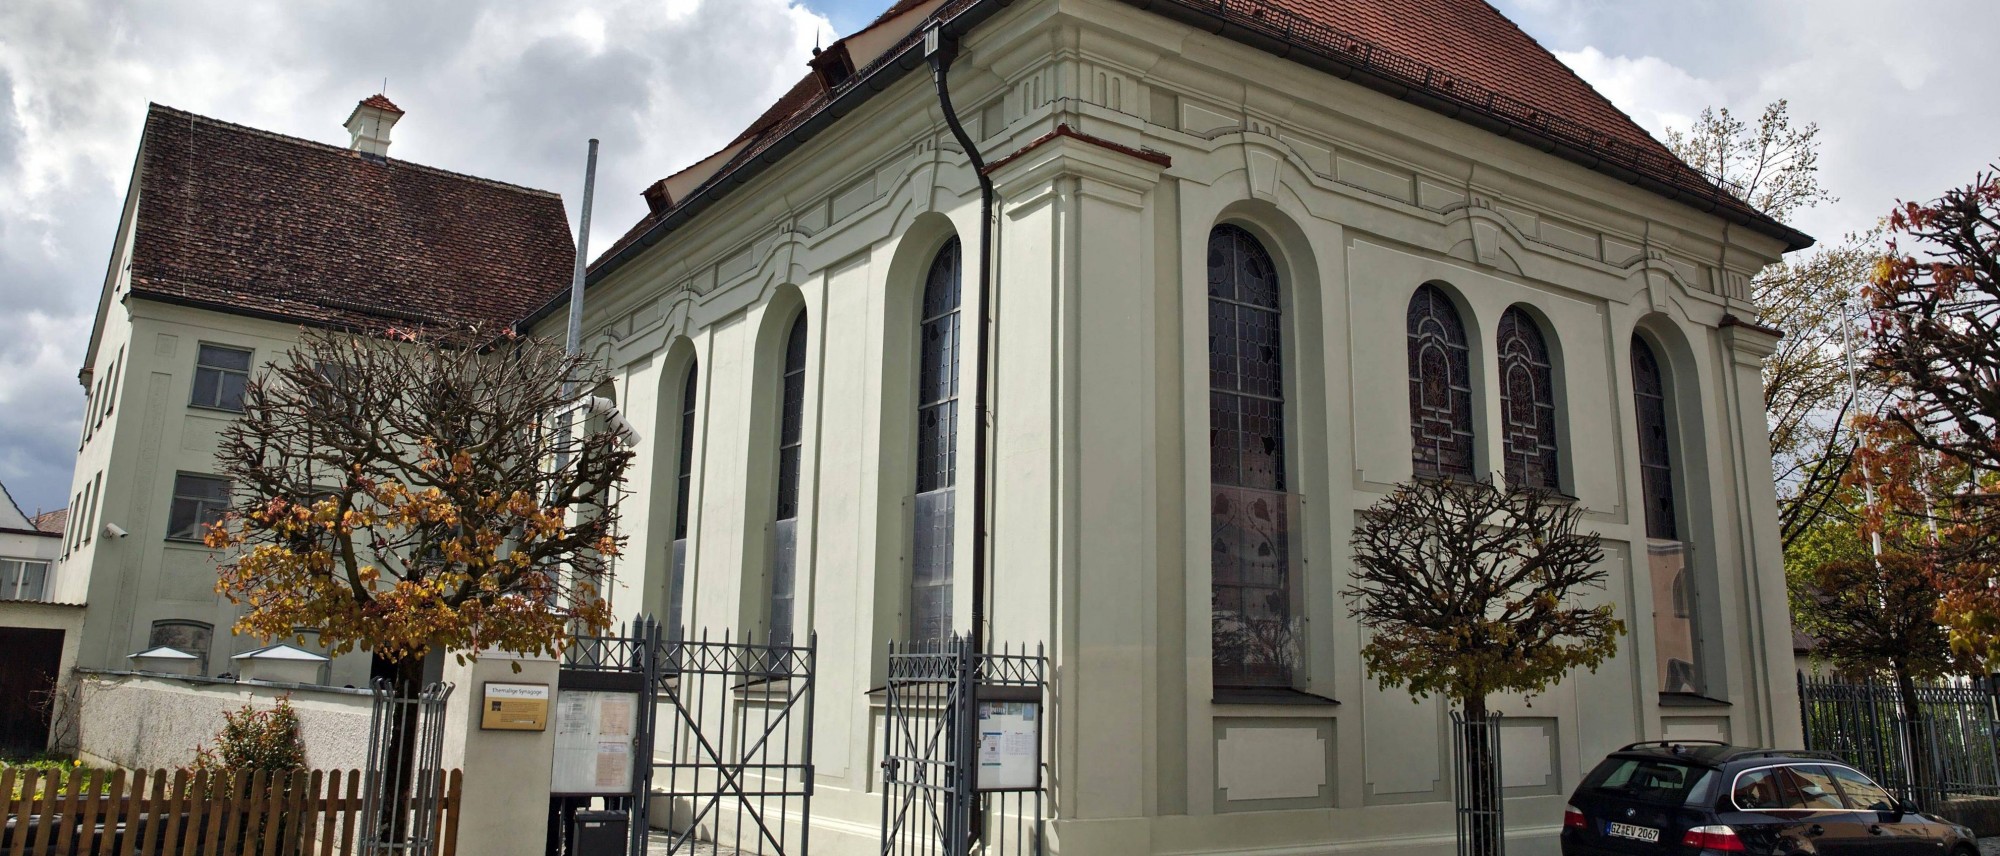 Außenansicht der ehemaligen Synagoge Ichenhausen. Führt zur Unterseite &quot;Ichenhausen&quot;.